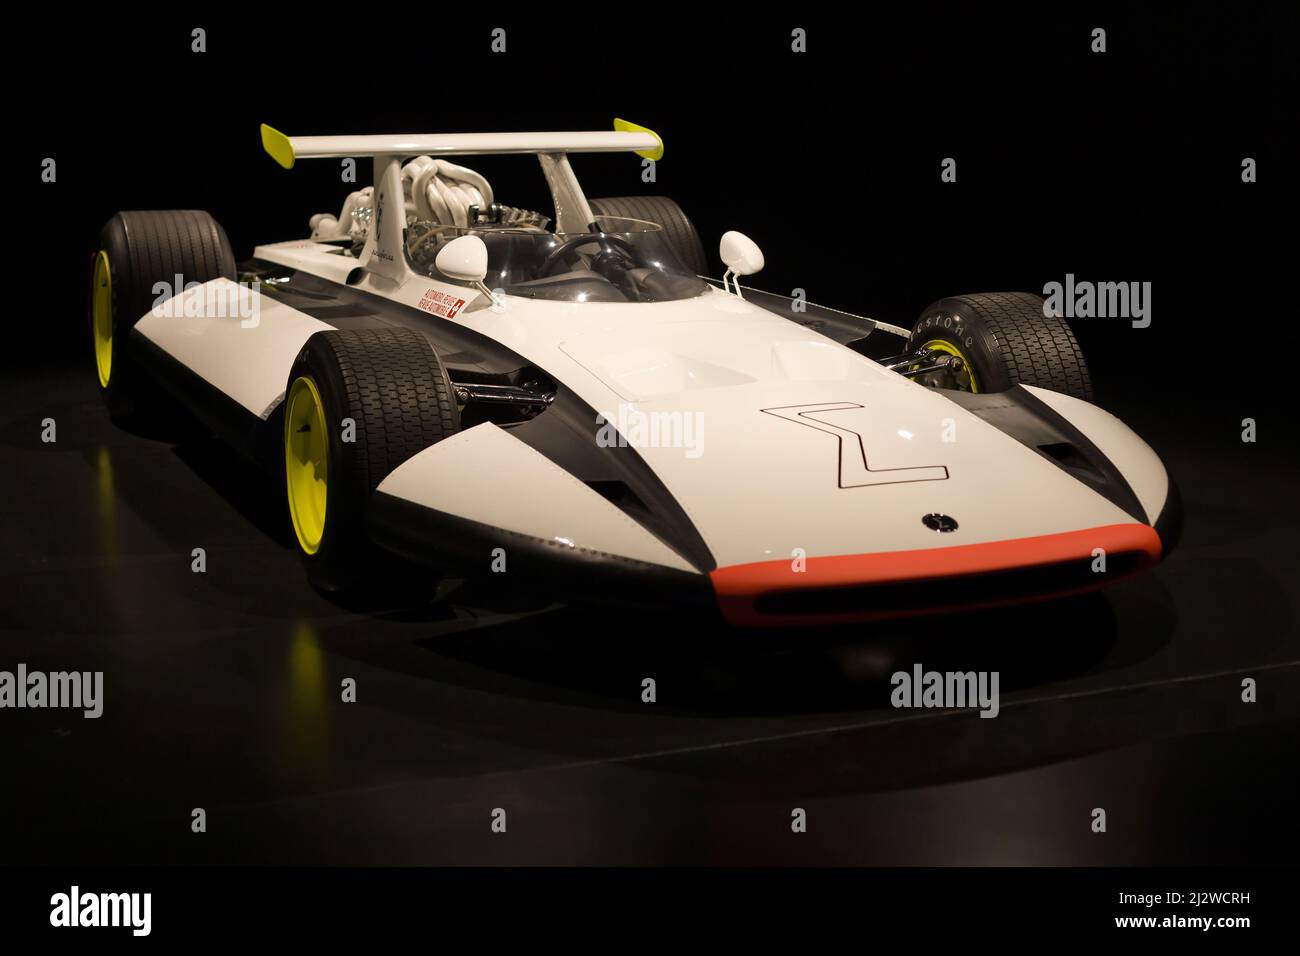 Turin, Italie - 14 août 2021 : le Grand Prix Ferrari Sigma présenté au Musée national de l'automobile (MAUTO) à Turin, Italie. Banque D'Images